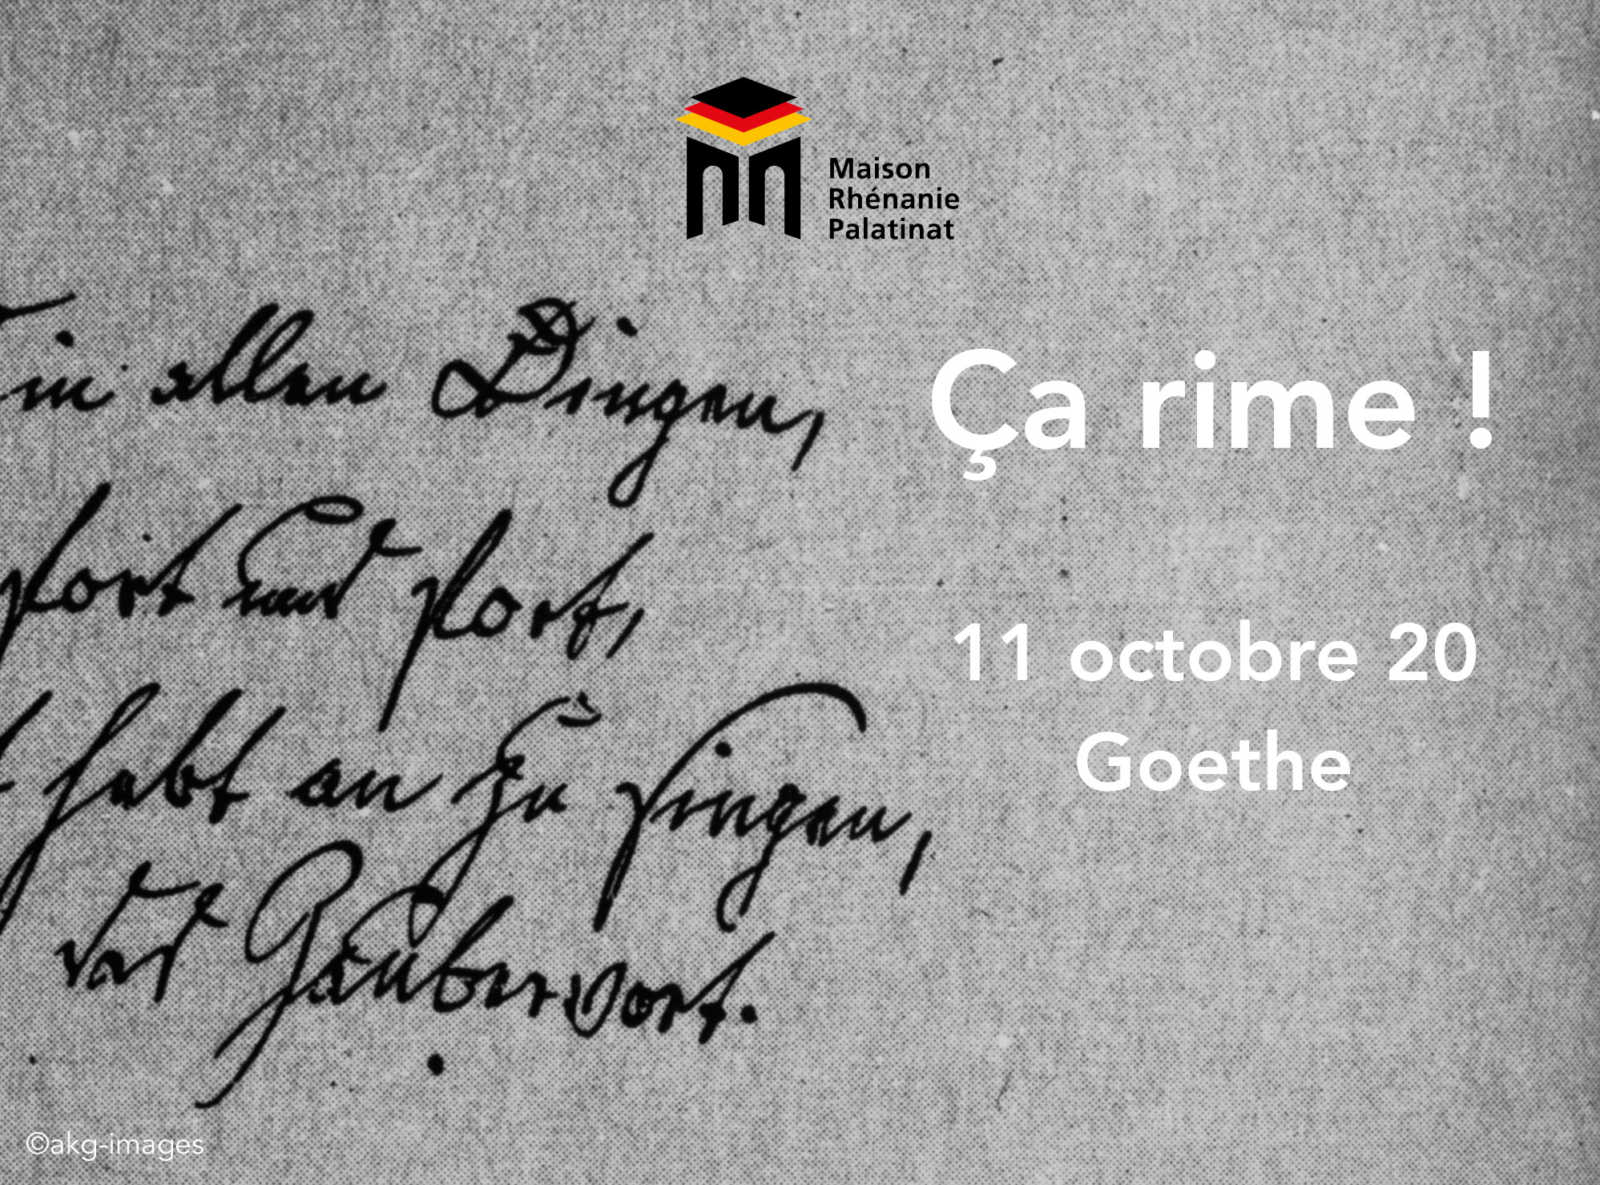 Dimanche 11 octobre 2020 à 11h : Première rencontre Ça rime ! – Goethe